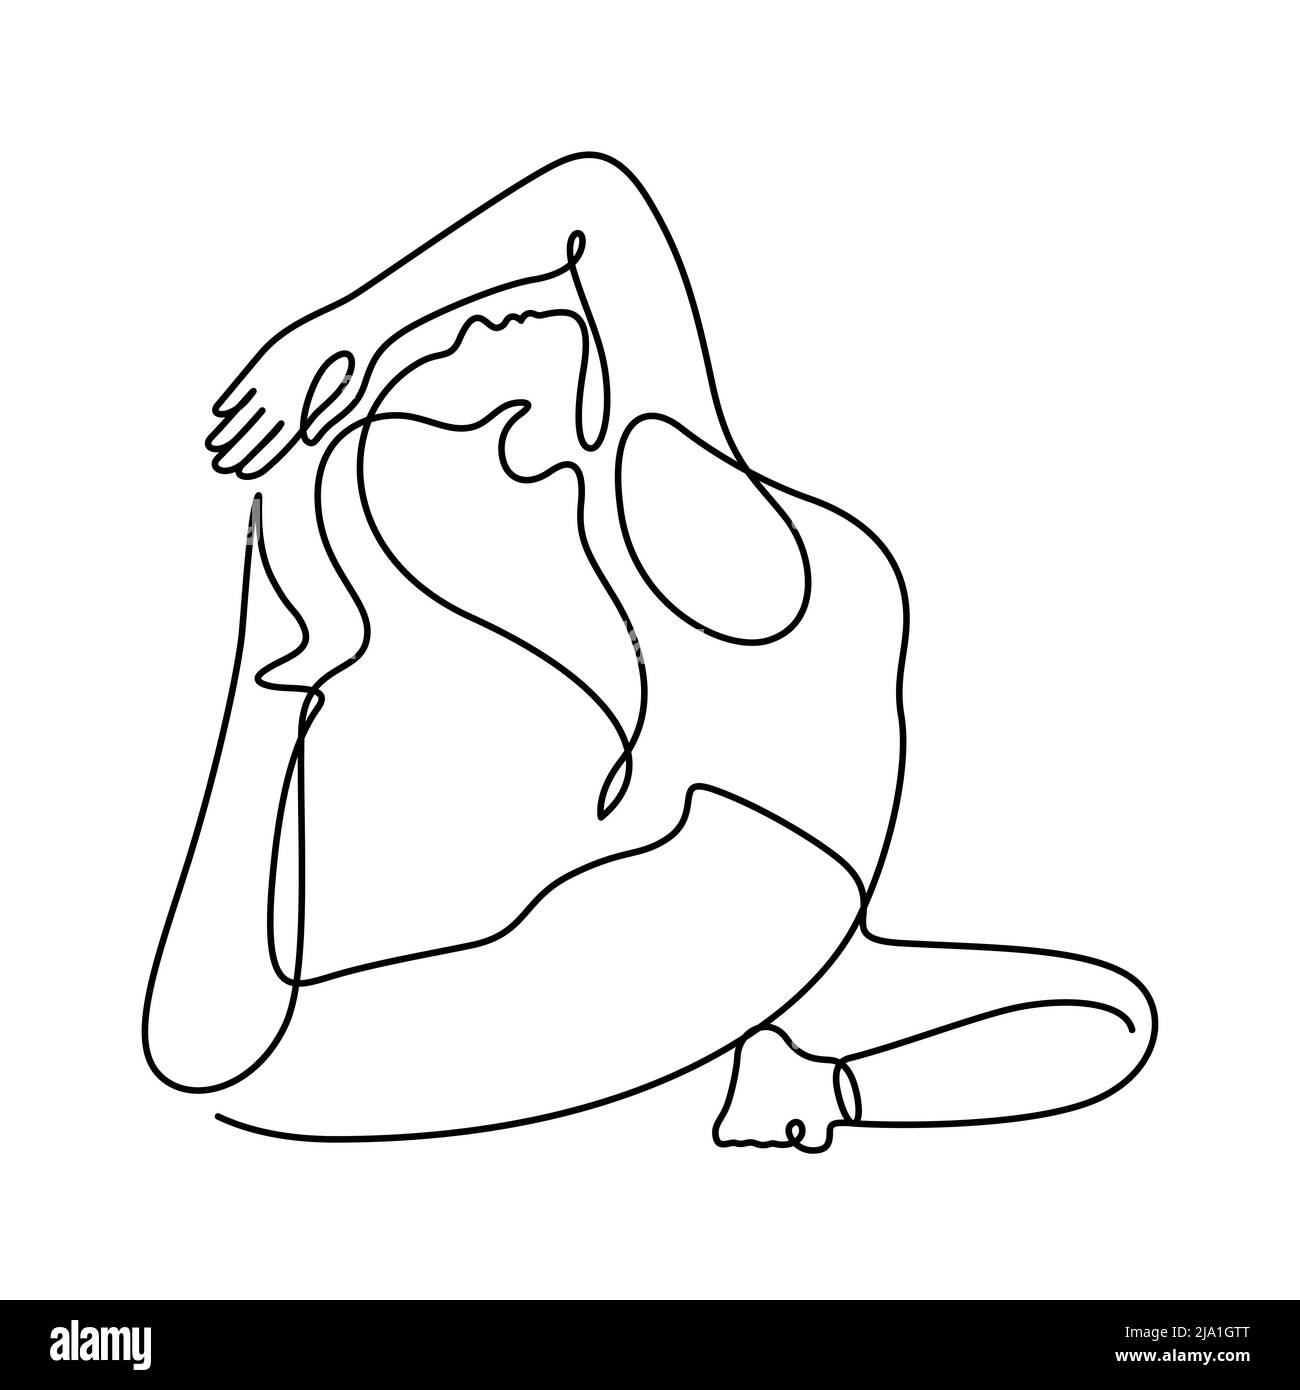 Frau in Yoga Pose Balancing Vektor Illustration. Eine Linienzeichnung und durchgehender Stil auf weißem Hintergrund isoliert. Stock Vektor